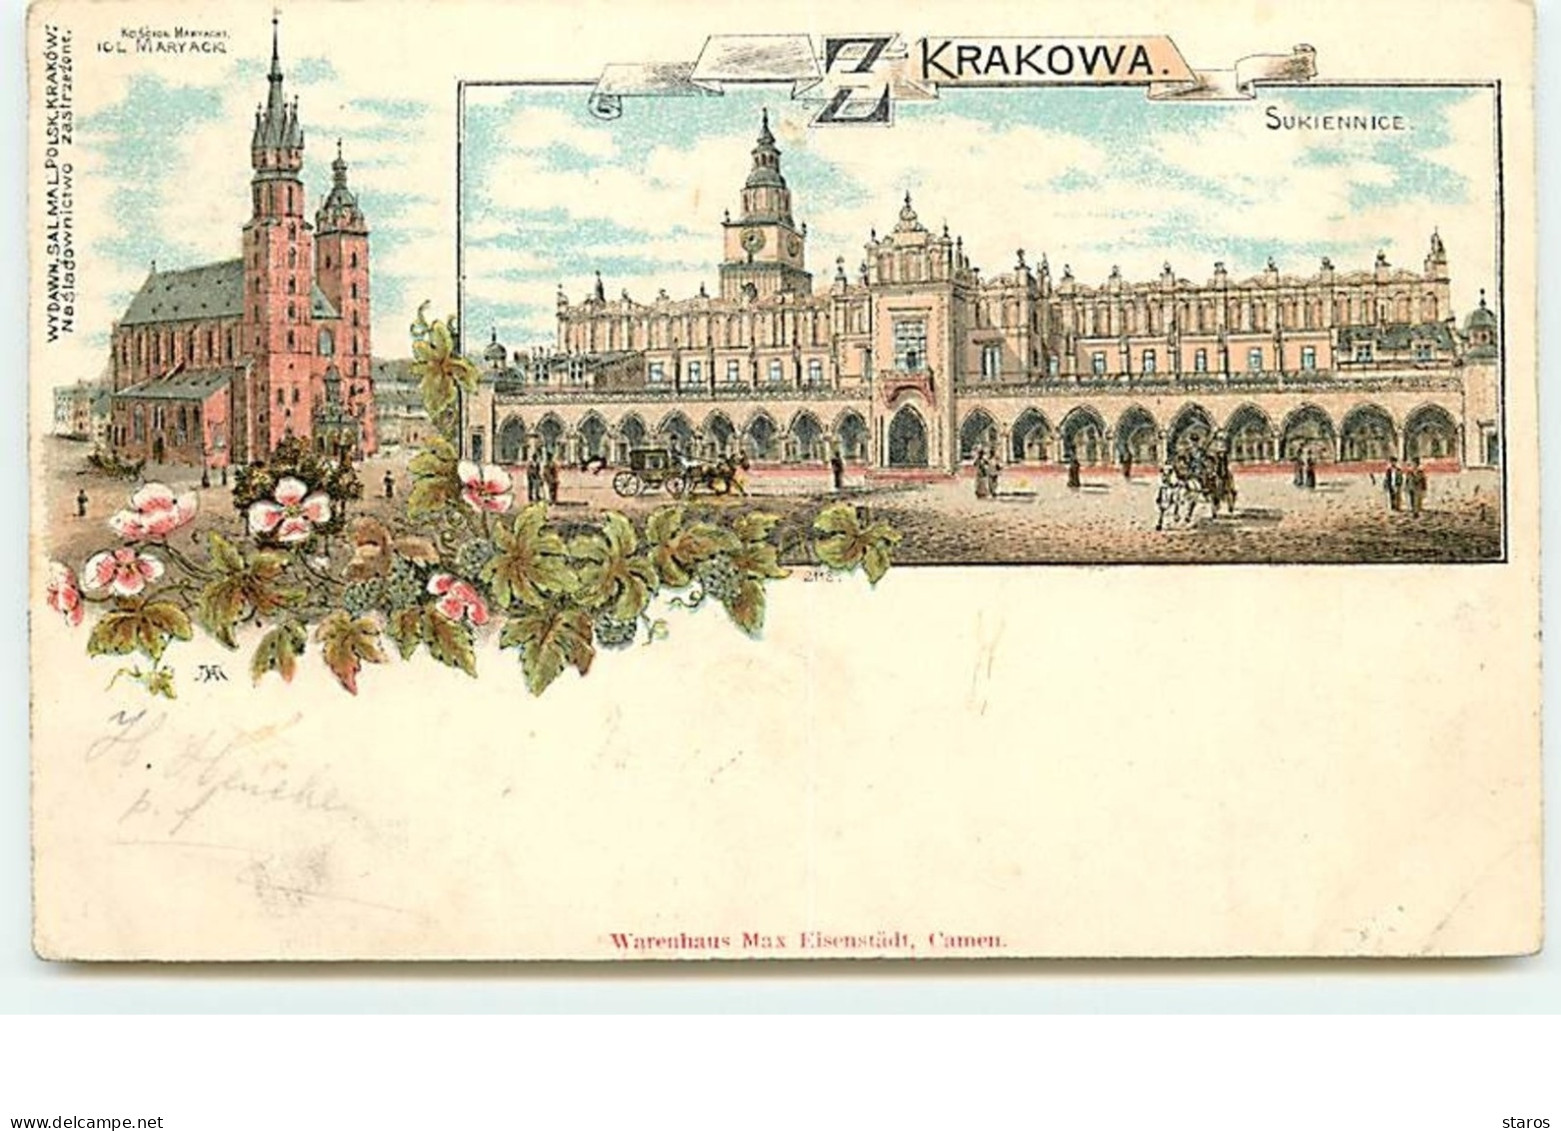 Krakowa - Sukiennice - Gruss - Poland